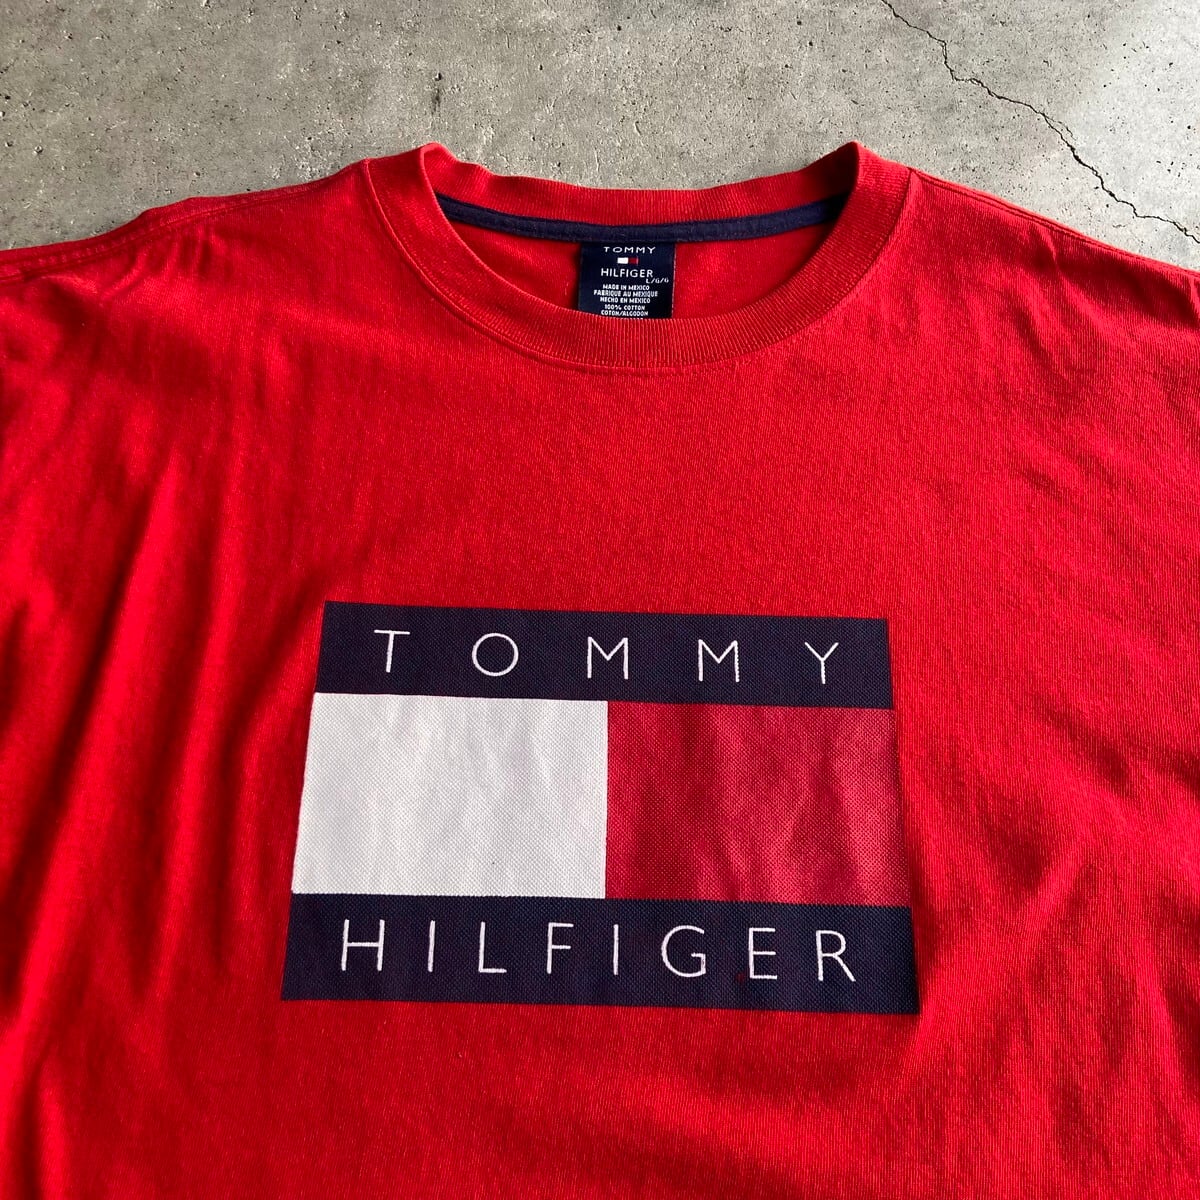 TOMMY HILFIGER トミーヒルフィガー ロゴプリント Tシャツ メンズL